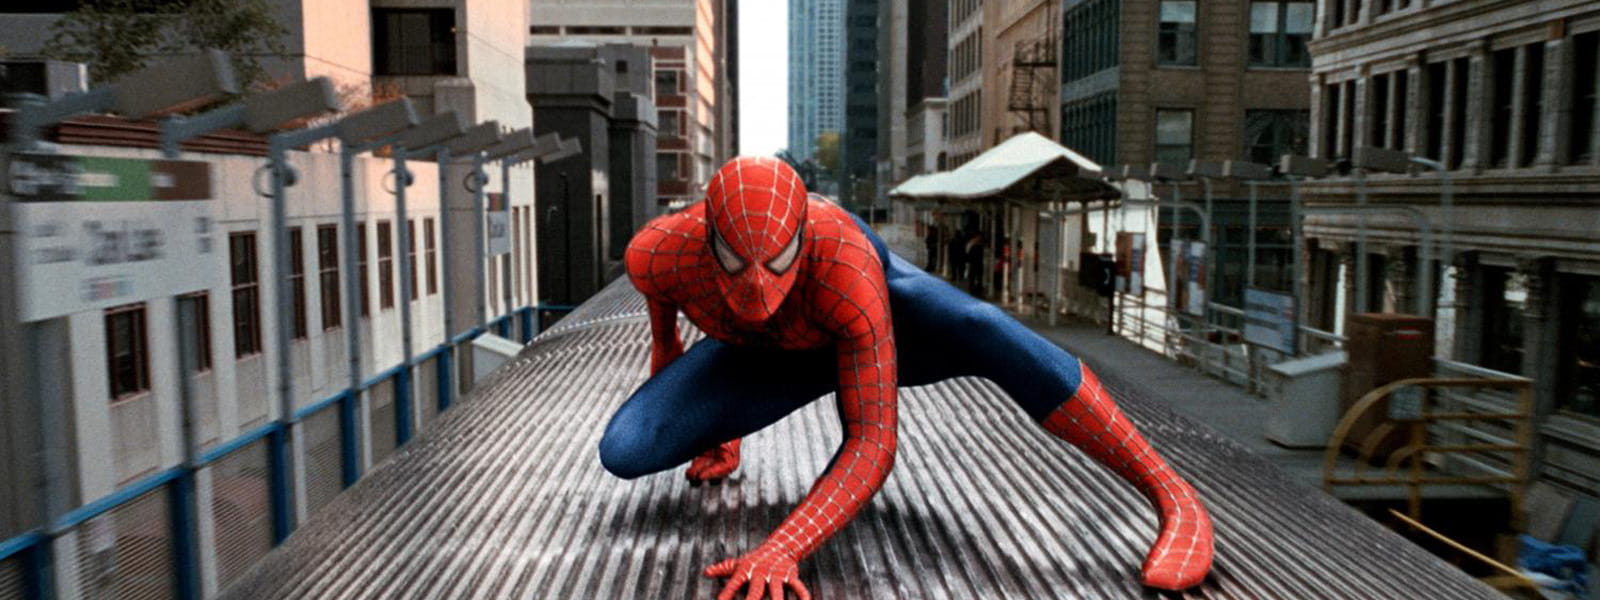 Spider-Man 2 4K 2004 big poster